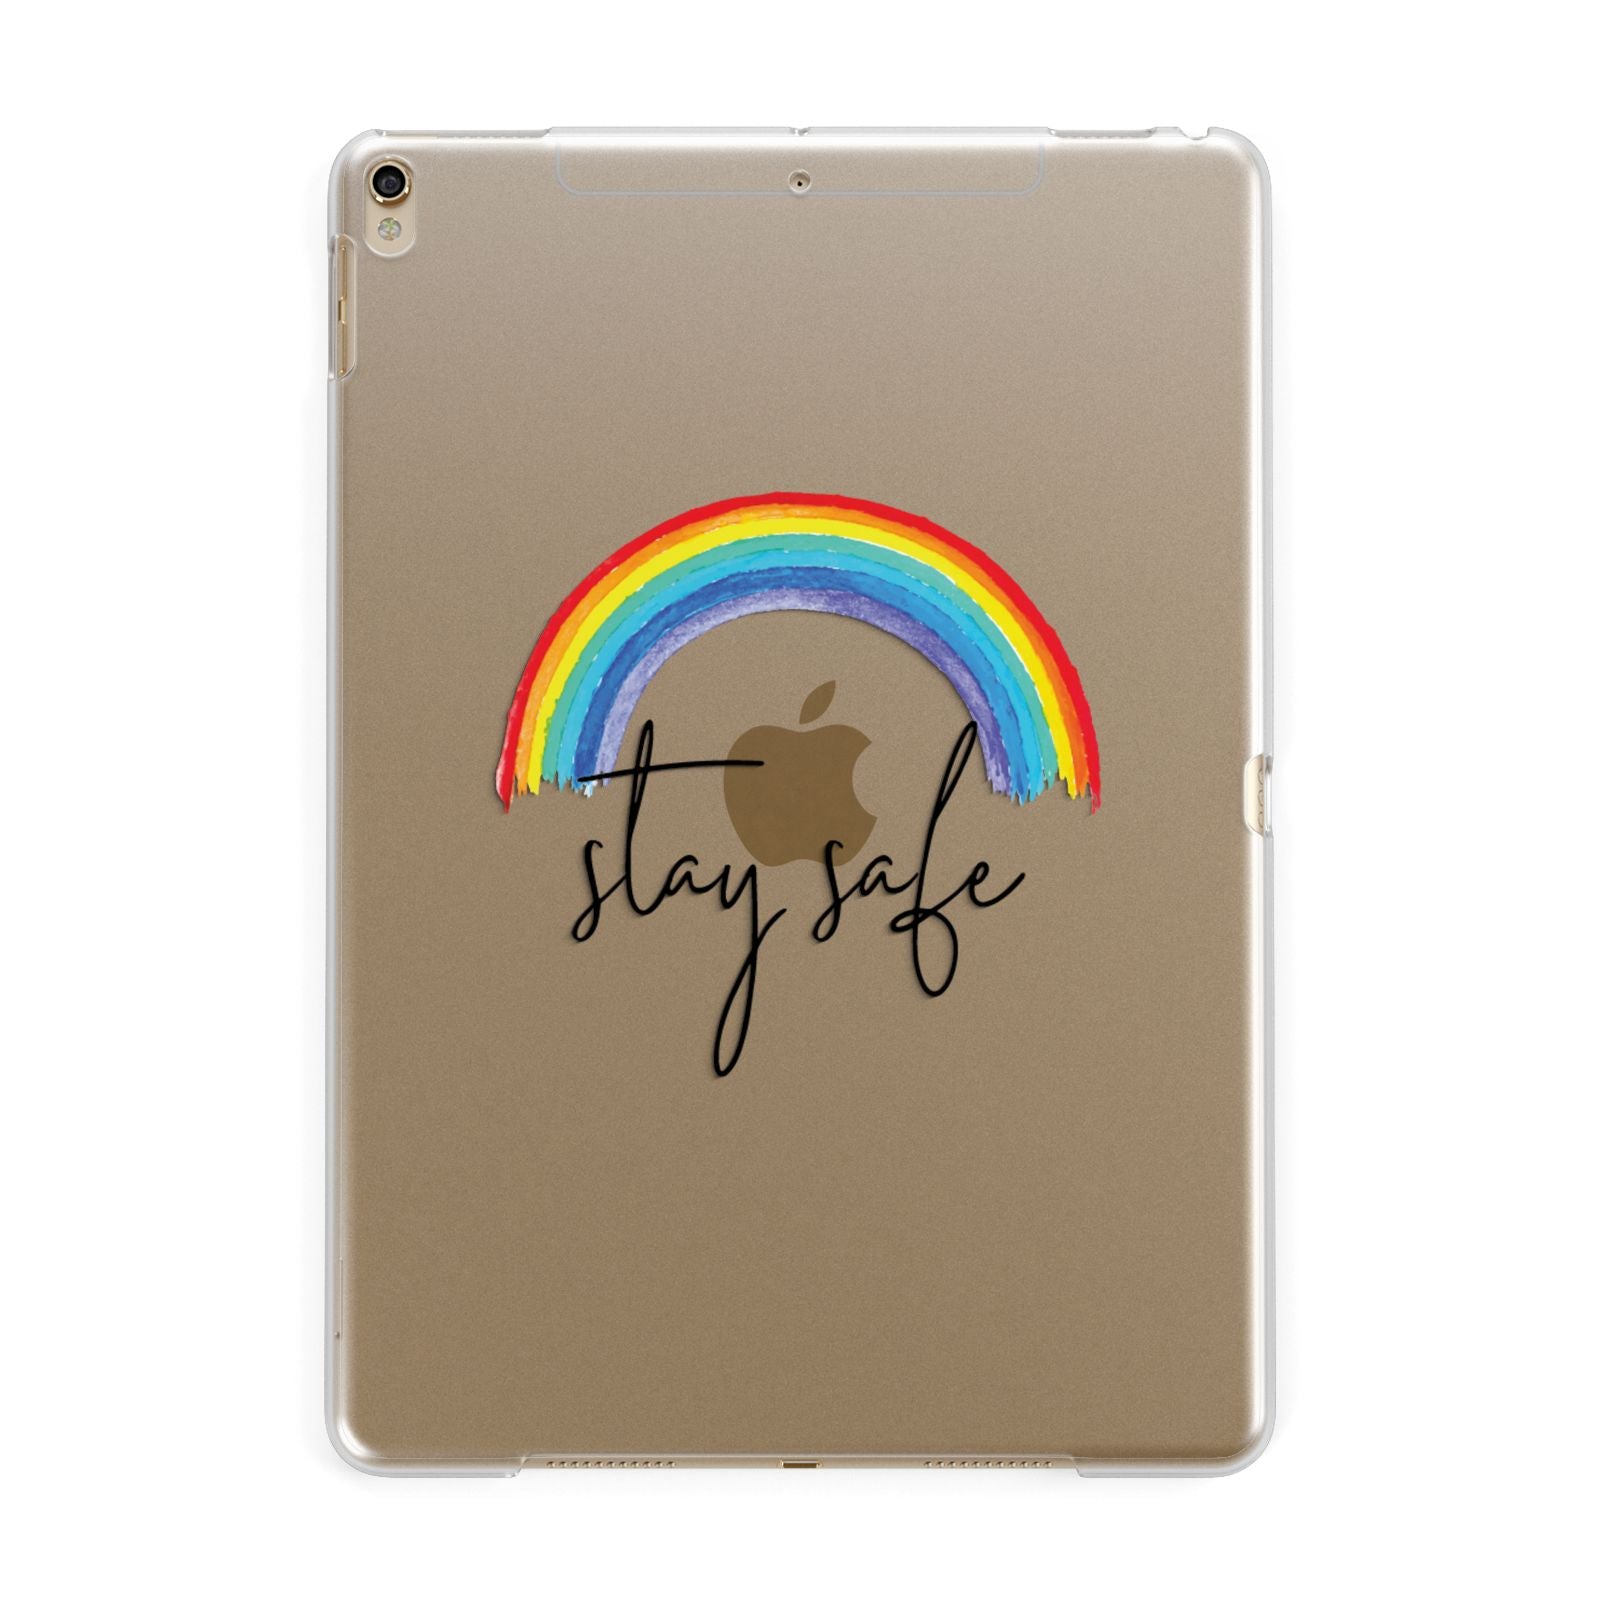 Stay Safe Rainbow Apple iPad Gold Case